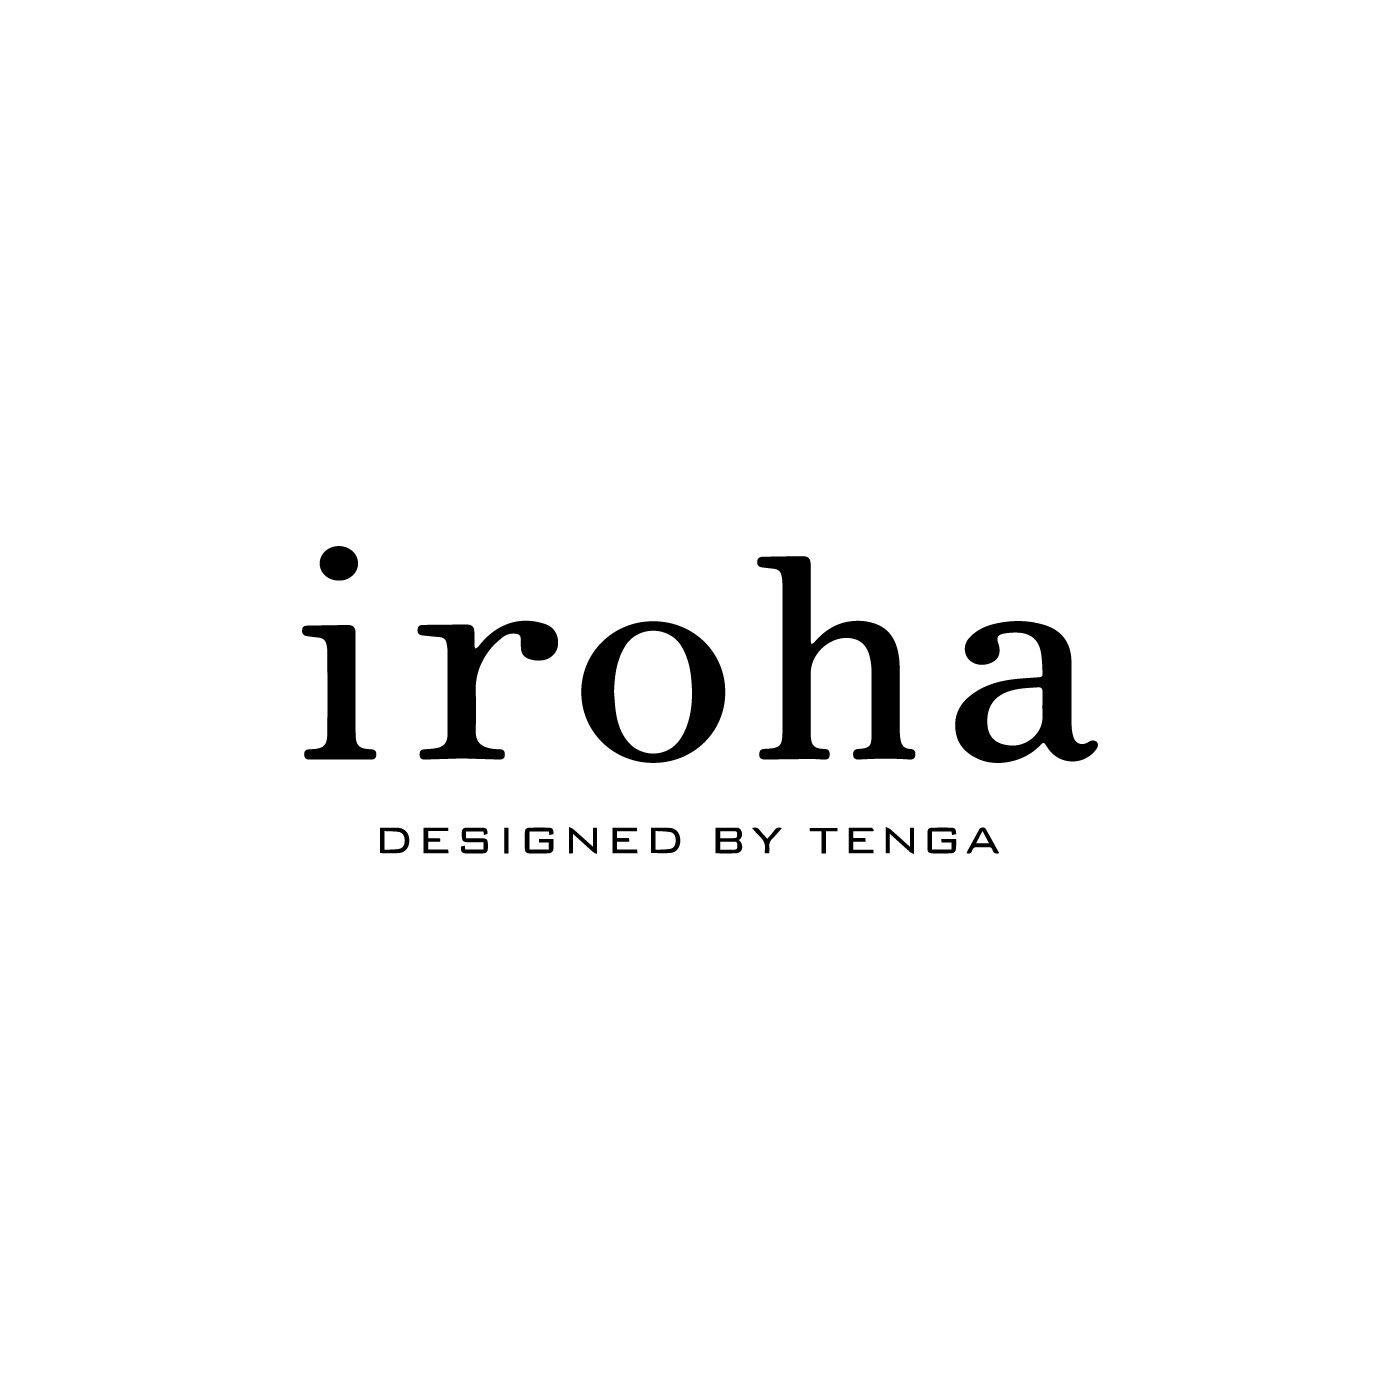 フェリシモコレクション|iroha　ひなざくら|寝る前にパックをするように、セルフケアのひとつとして、からだが求める「気持ちよさ」に応えることは、もっと大切にしてもいいこと。そんな思いで2013年3月から「iroha」はスタートしました。